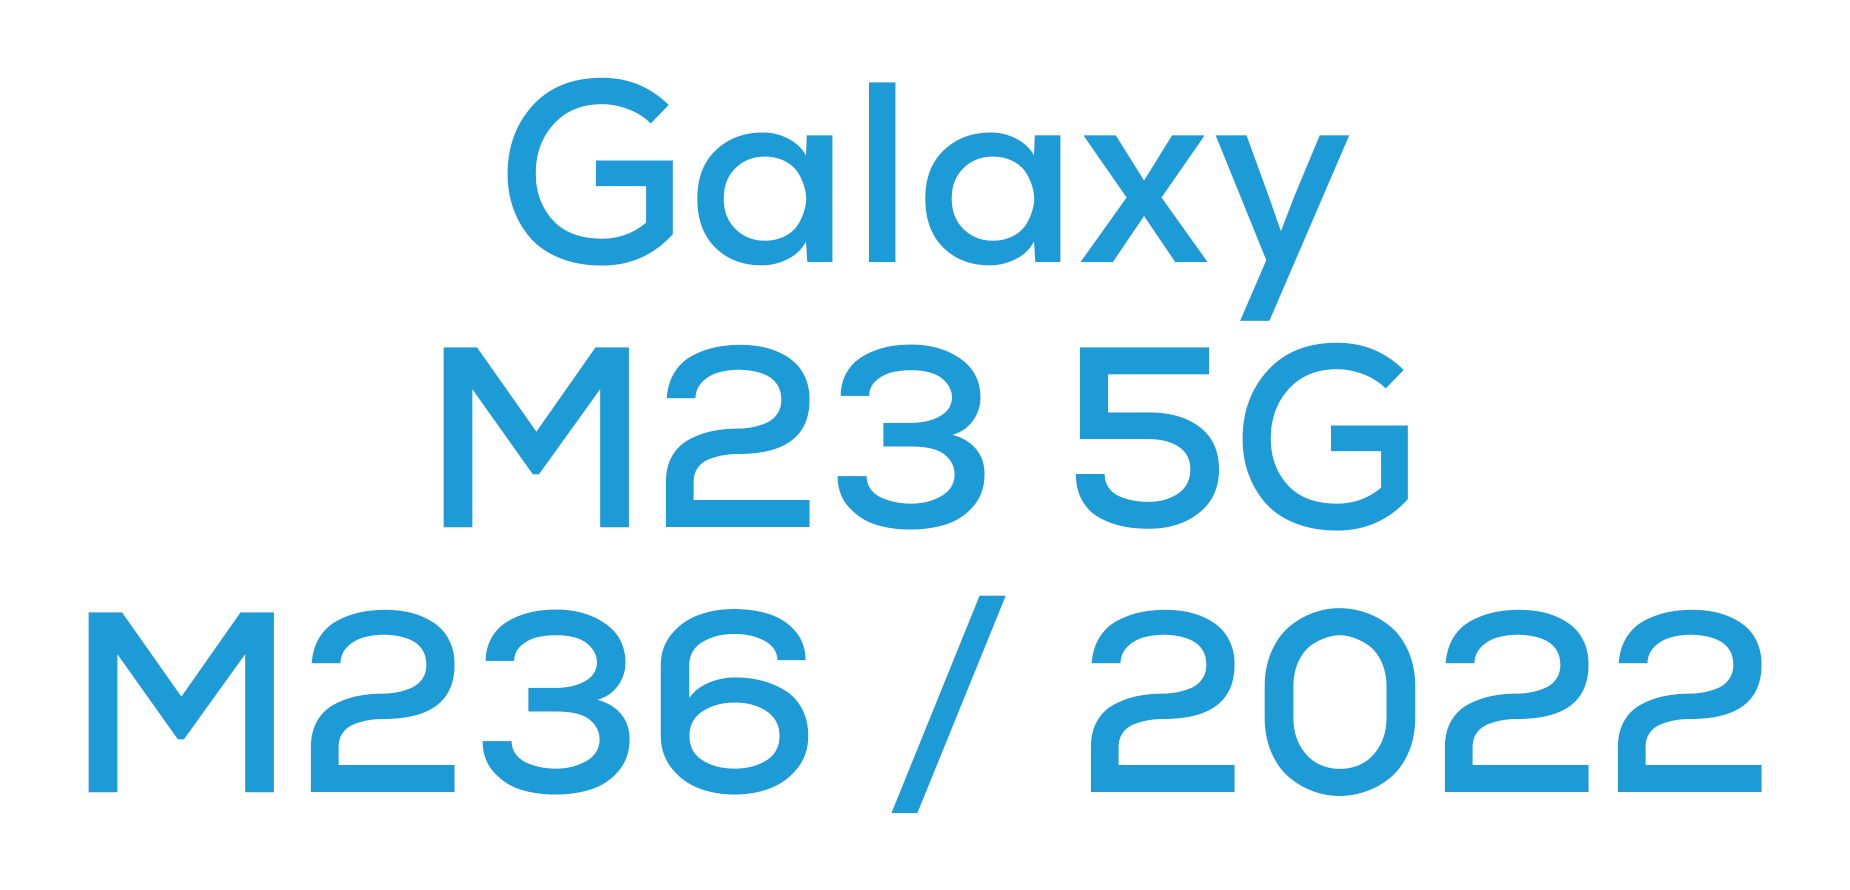 M23 5G (M236 / 2022)